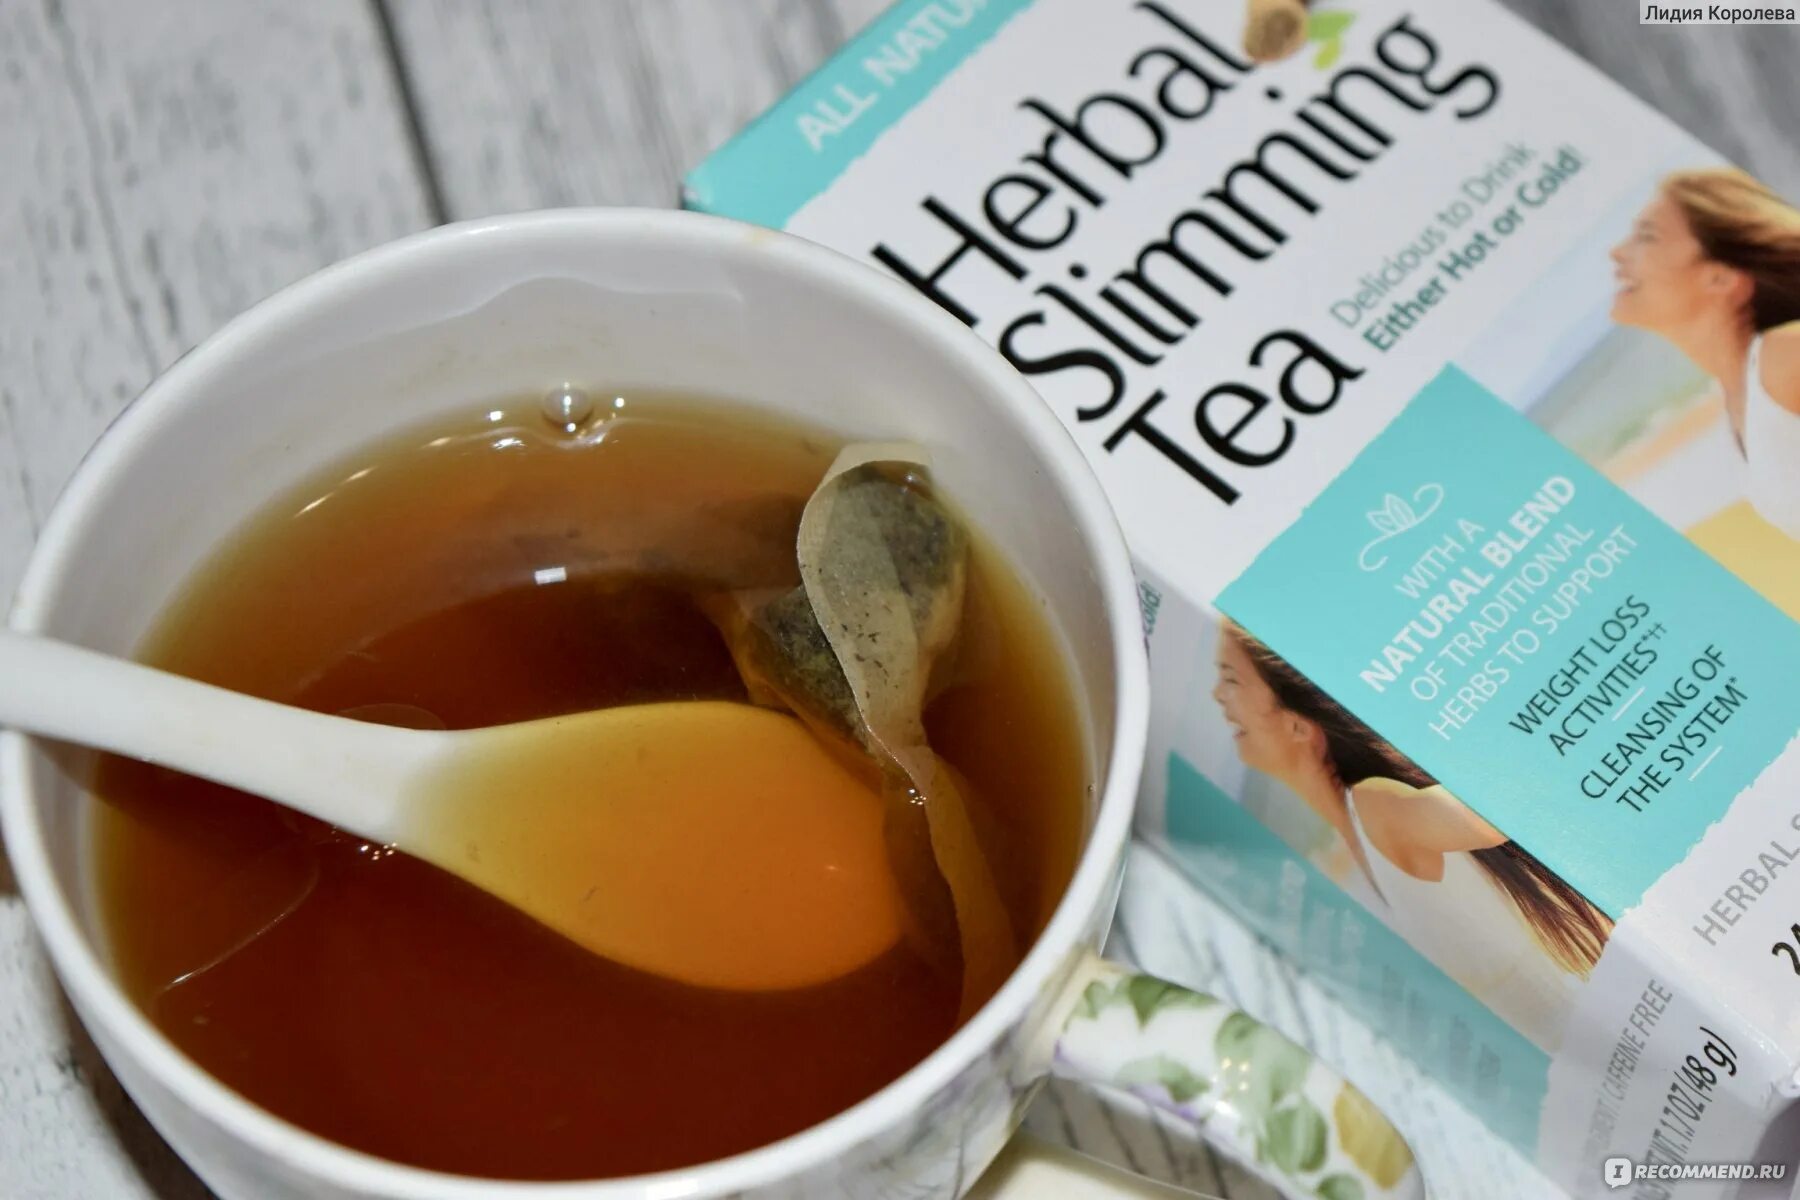 Слабительное утром. Herbal Slimming Tea инструкция по применению на русском языке.